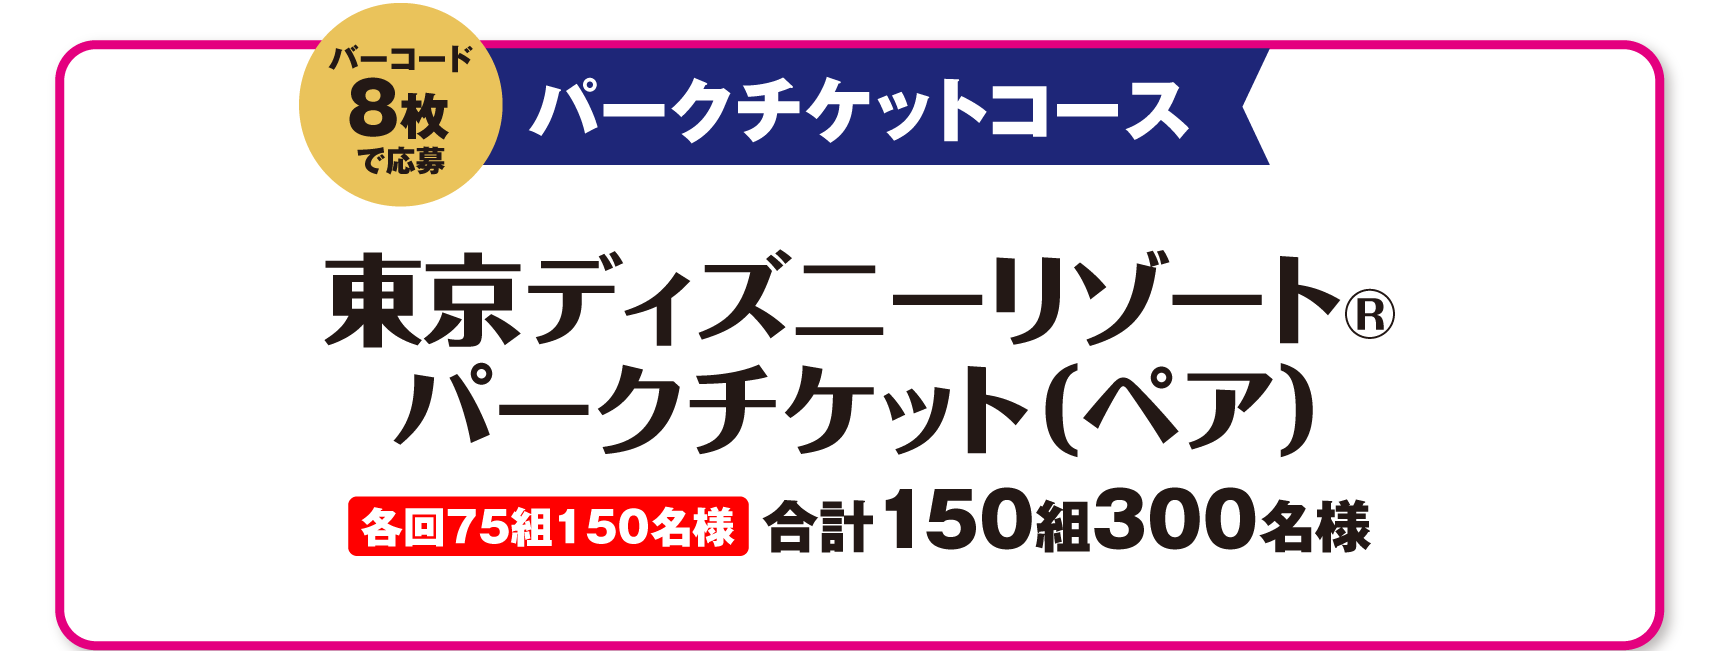 パークチケットコース バーコード6枚で応募 東京ディズニーリゾート®・パークチケット(ペア) 合計150組300名様